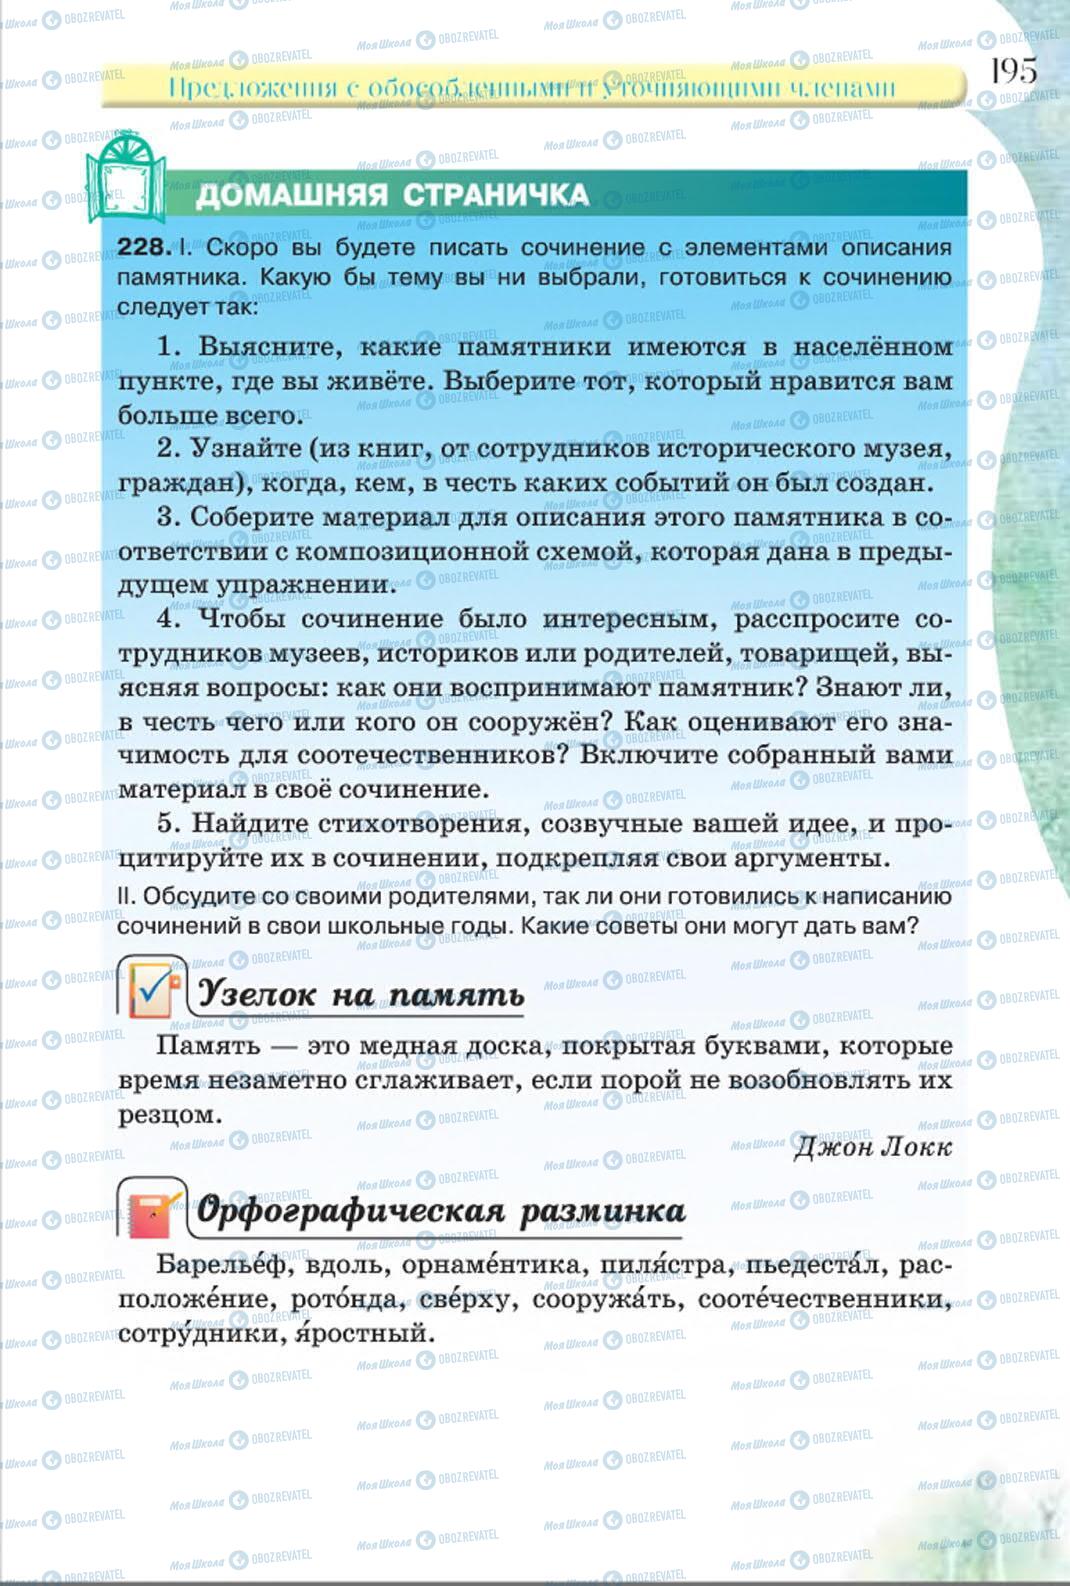 Учебники Русский язык 8 класс страница 195